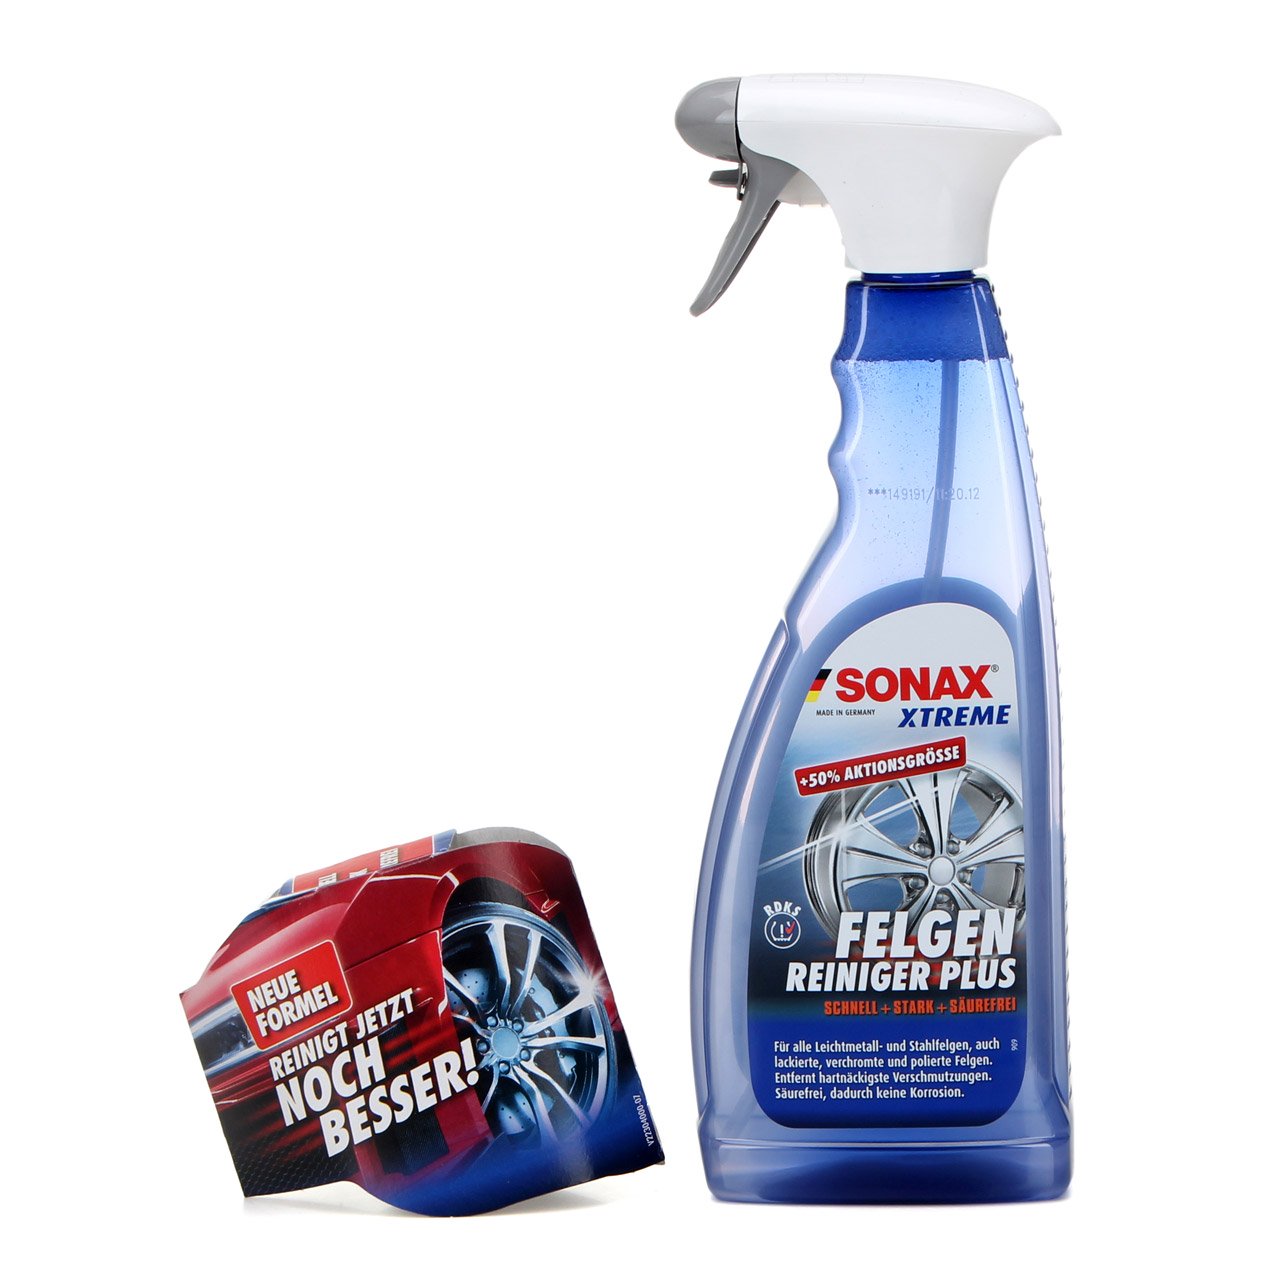 SONAX Xtreme Innen und Außen Pflege Set - Shampoo FelgenReiniger Scheibe Reifen